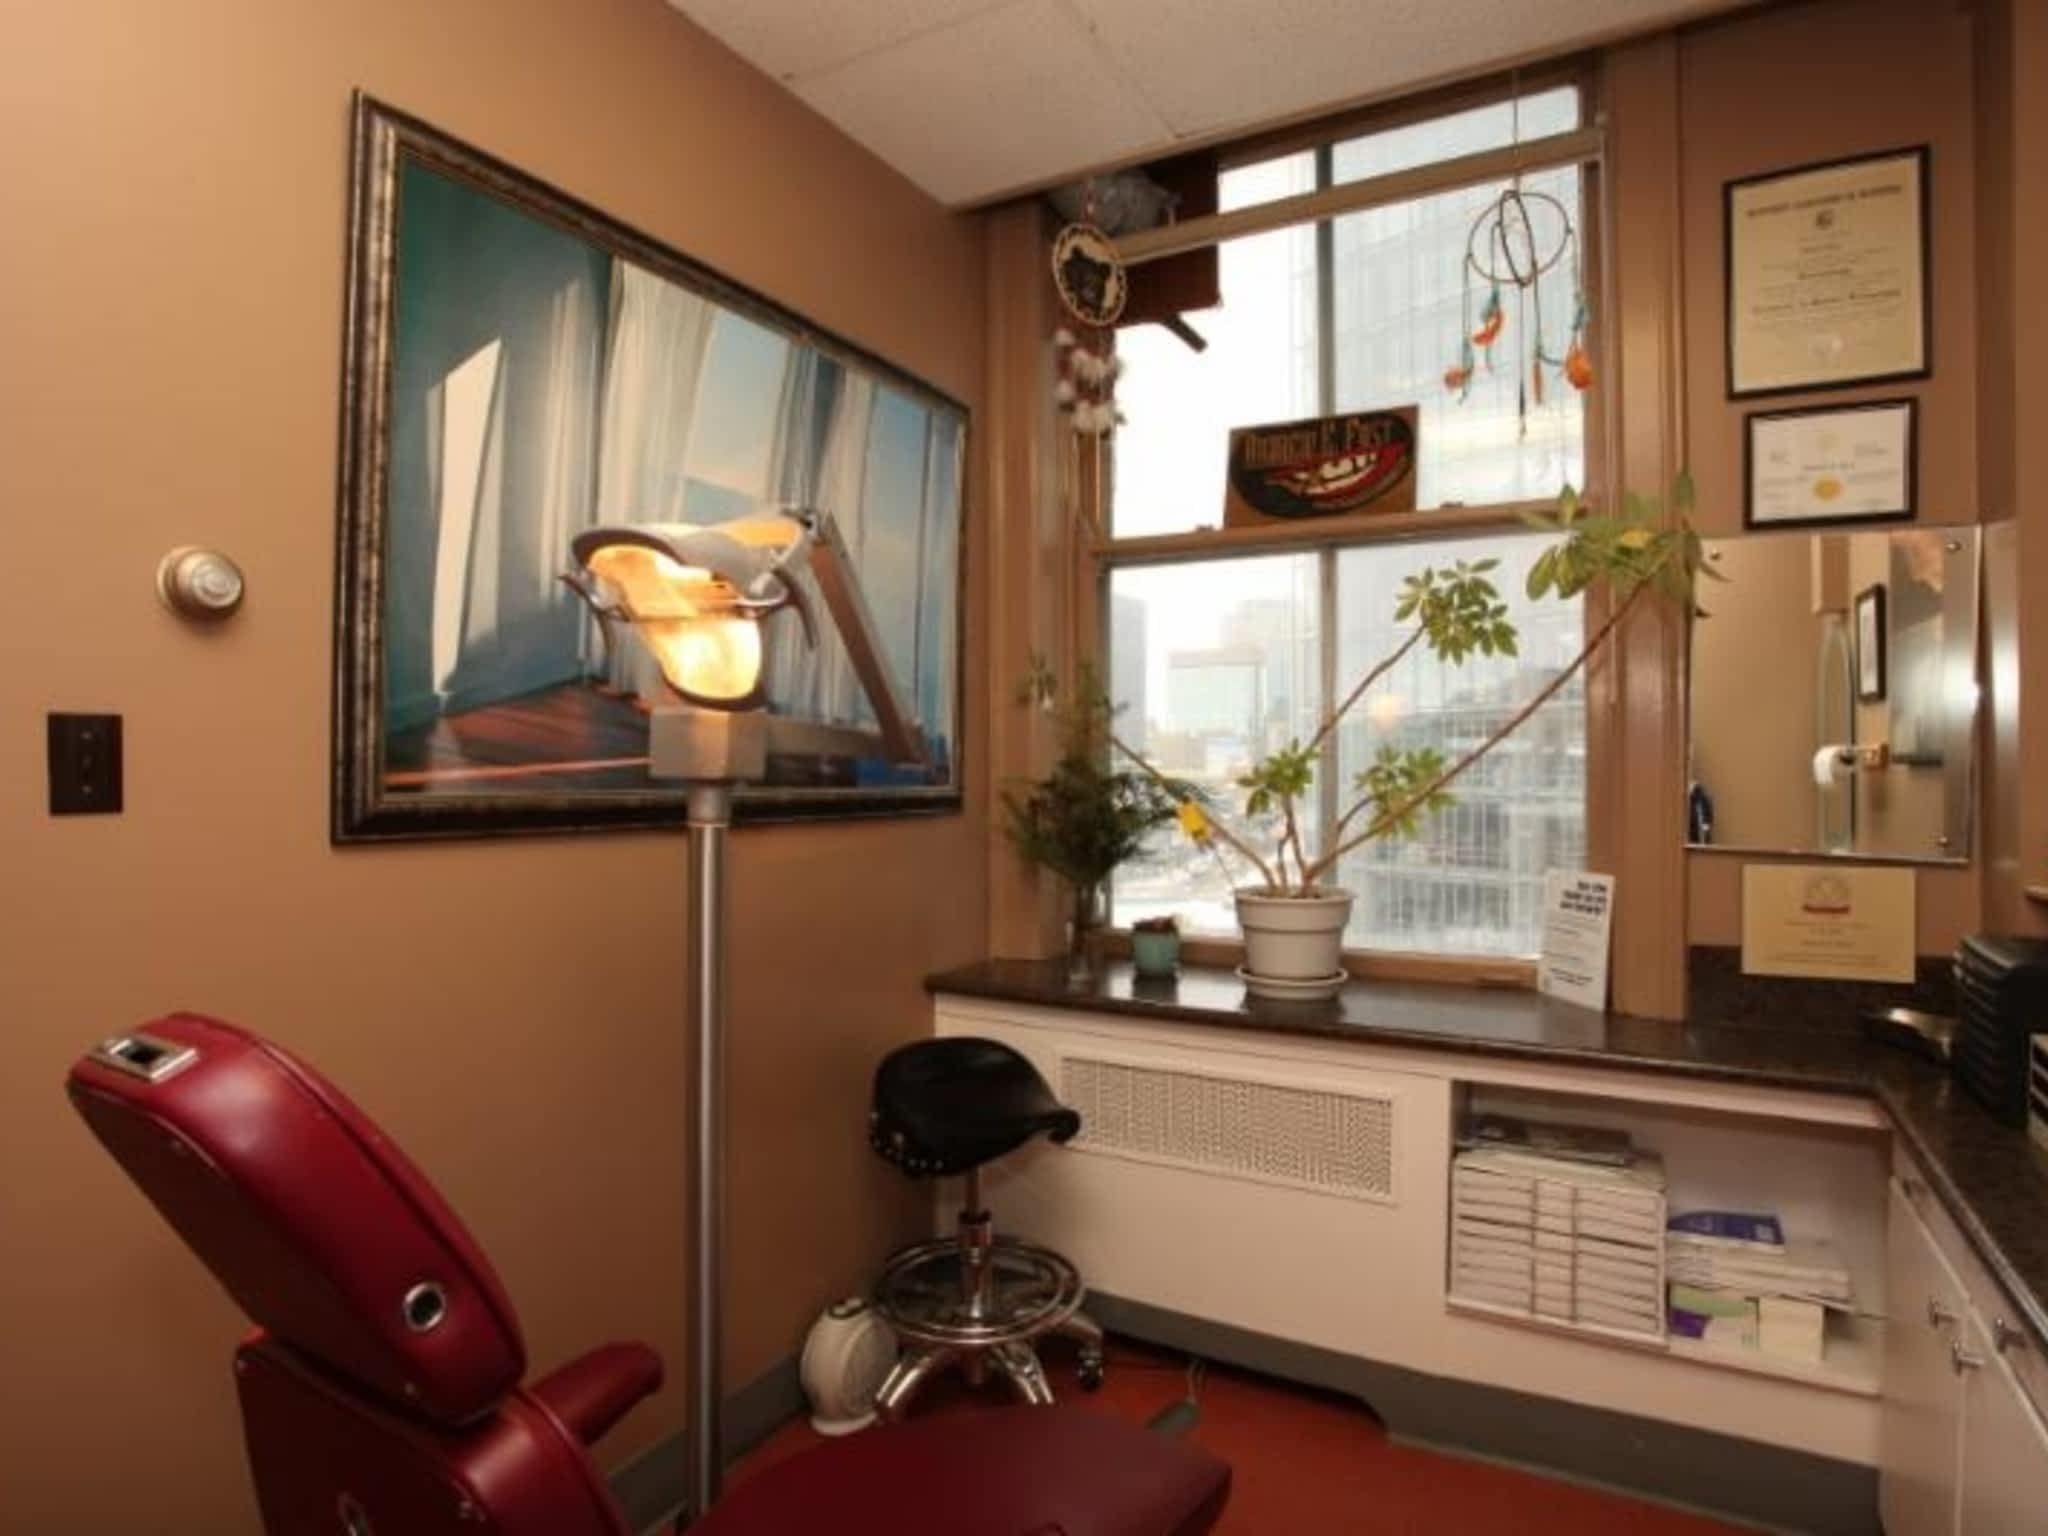 photo Eleonore's Denture Clinic